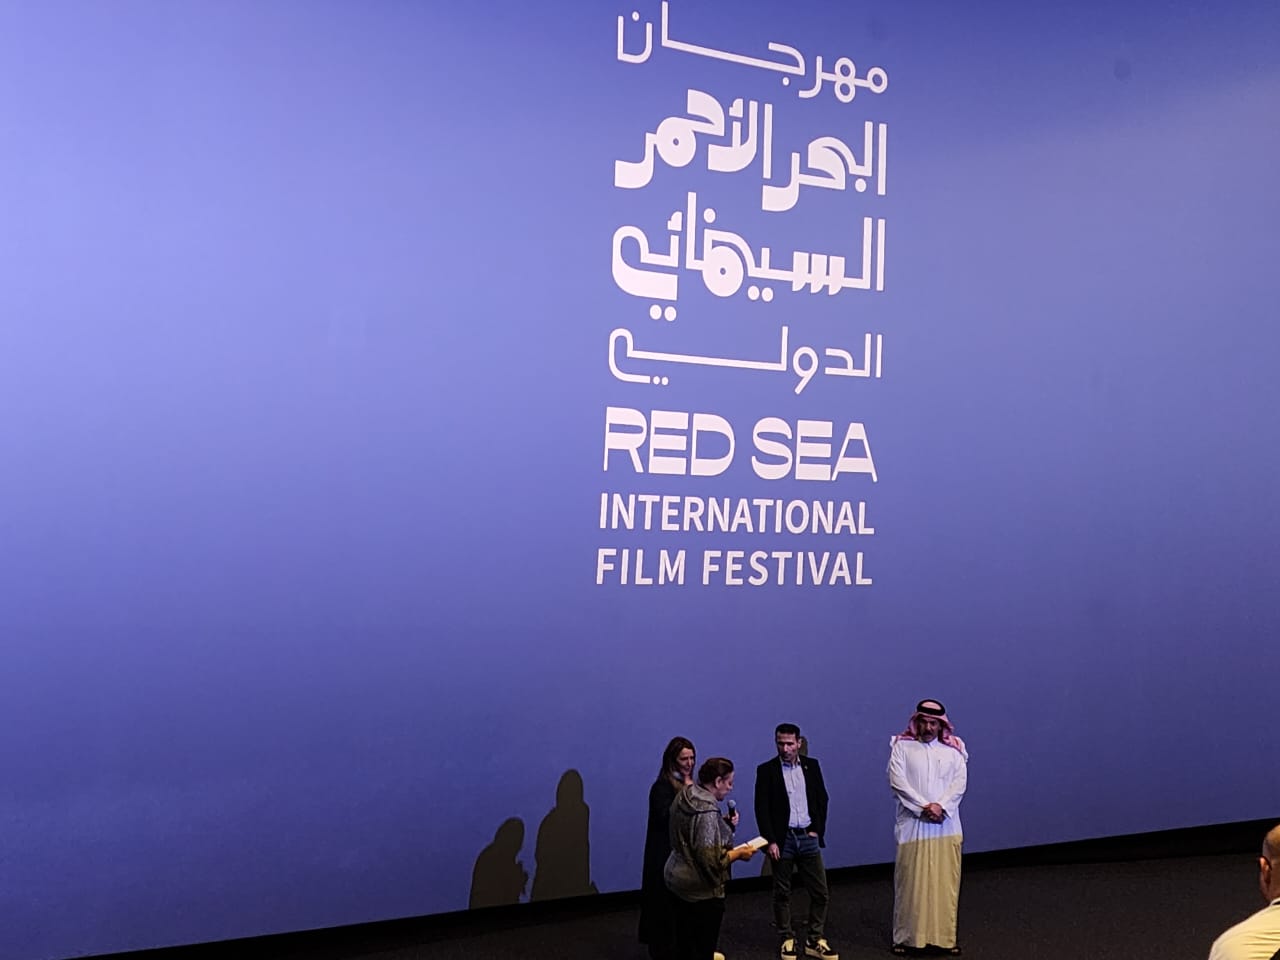 مخرج فيلم  إخفاء صدام حسين  من مهرجان البحر الأحمر  تجربة لا أتمنى تكرارها  | صور